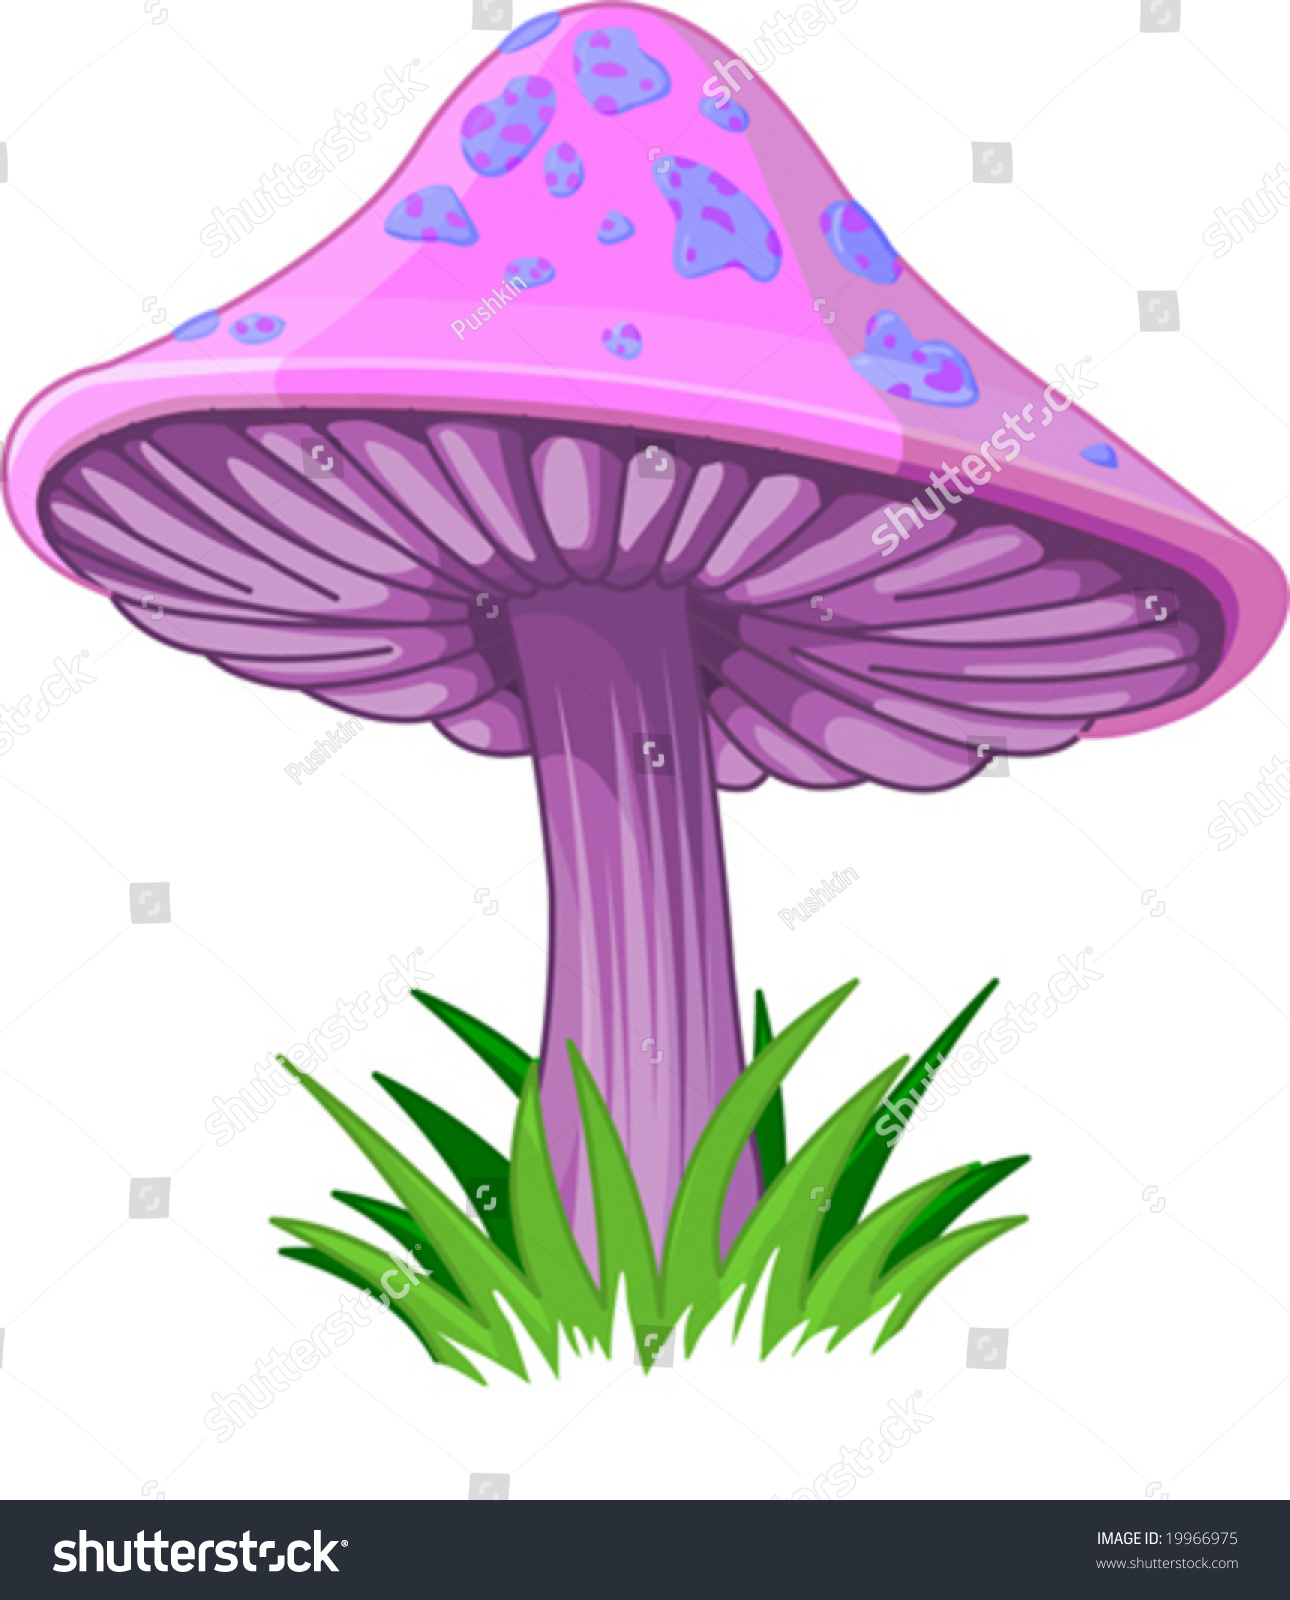 toadstool mushroom clipart - photo #41